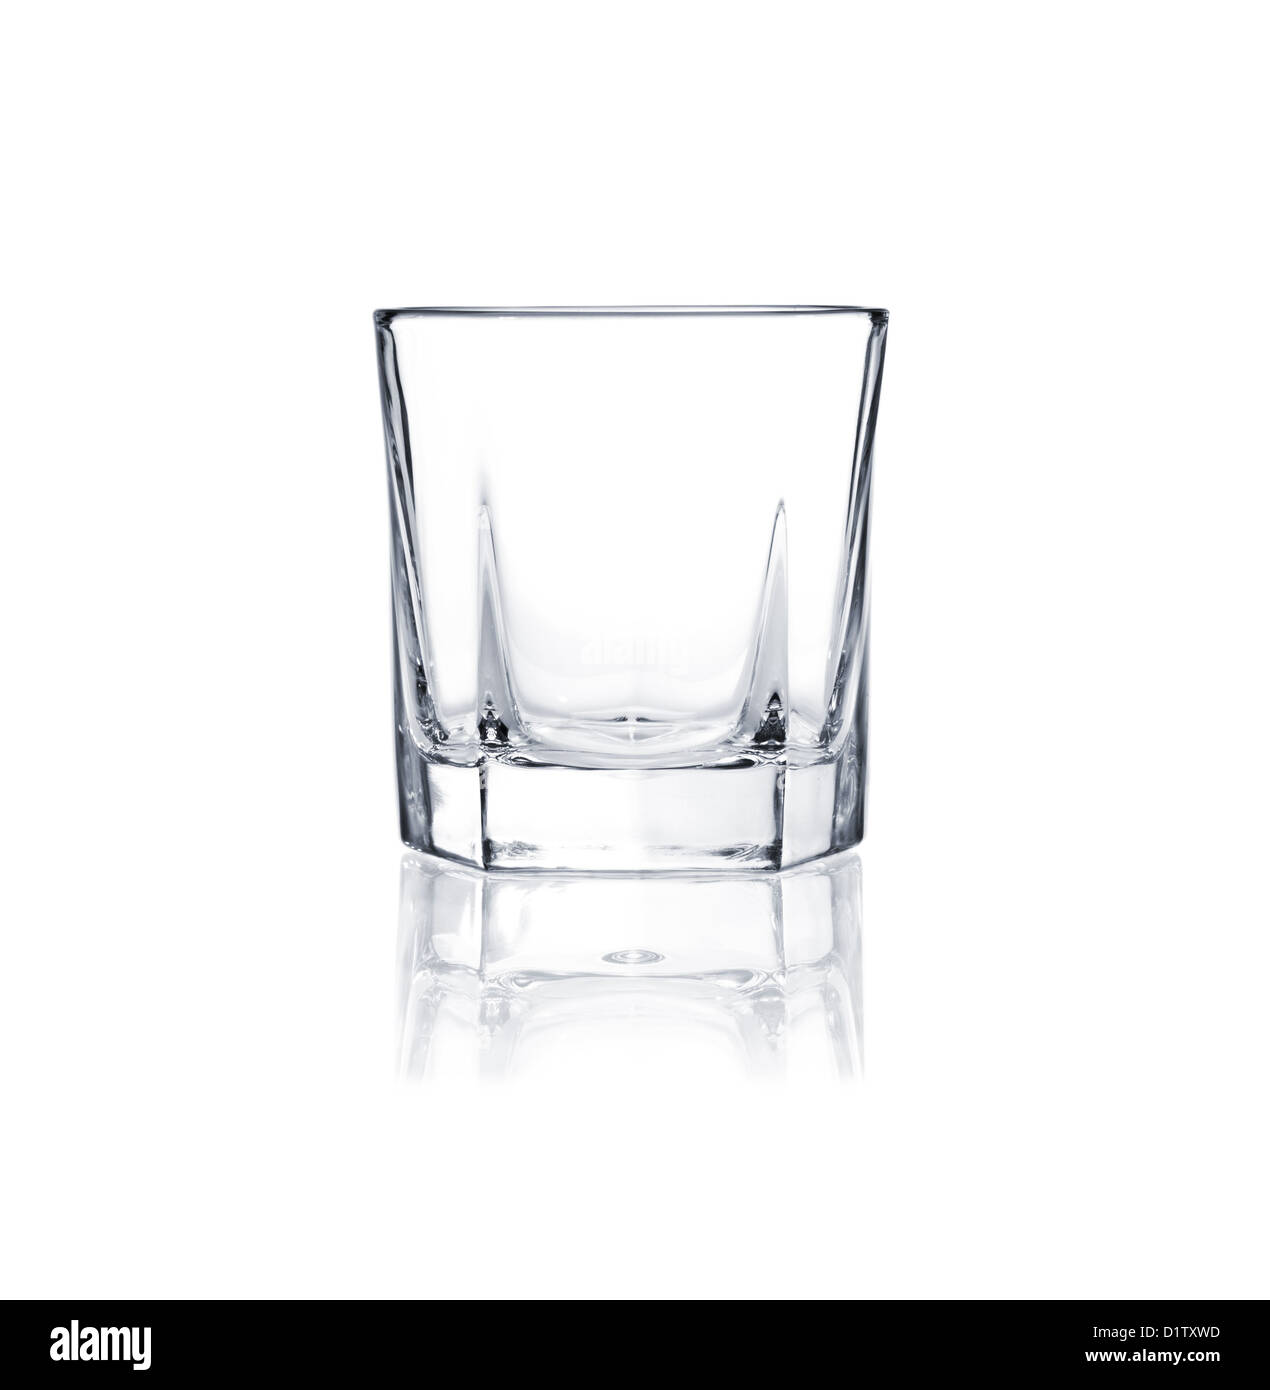 Vaso de whisky vacío aislado sobre fondo blanco. Foto de stock